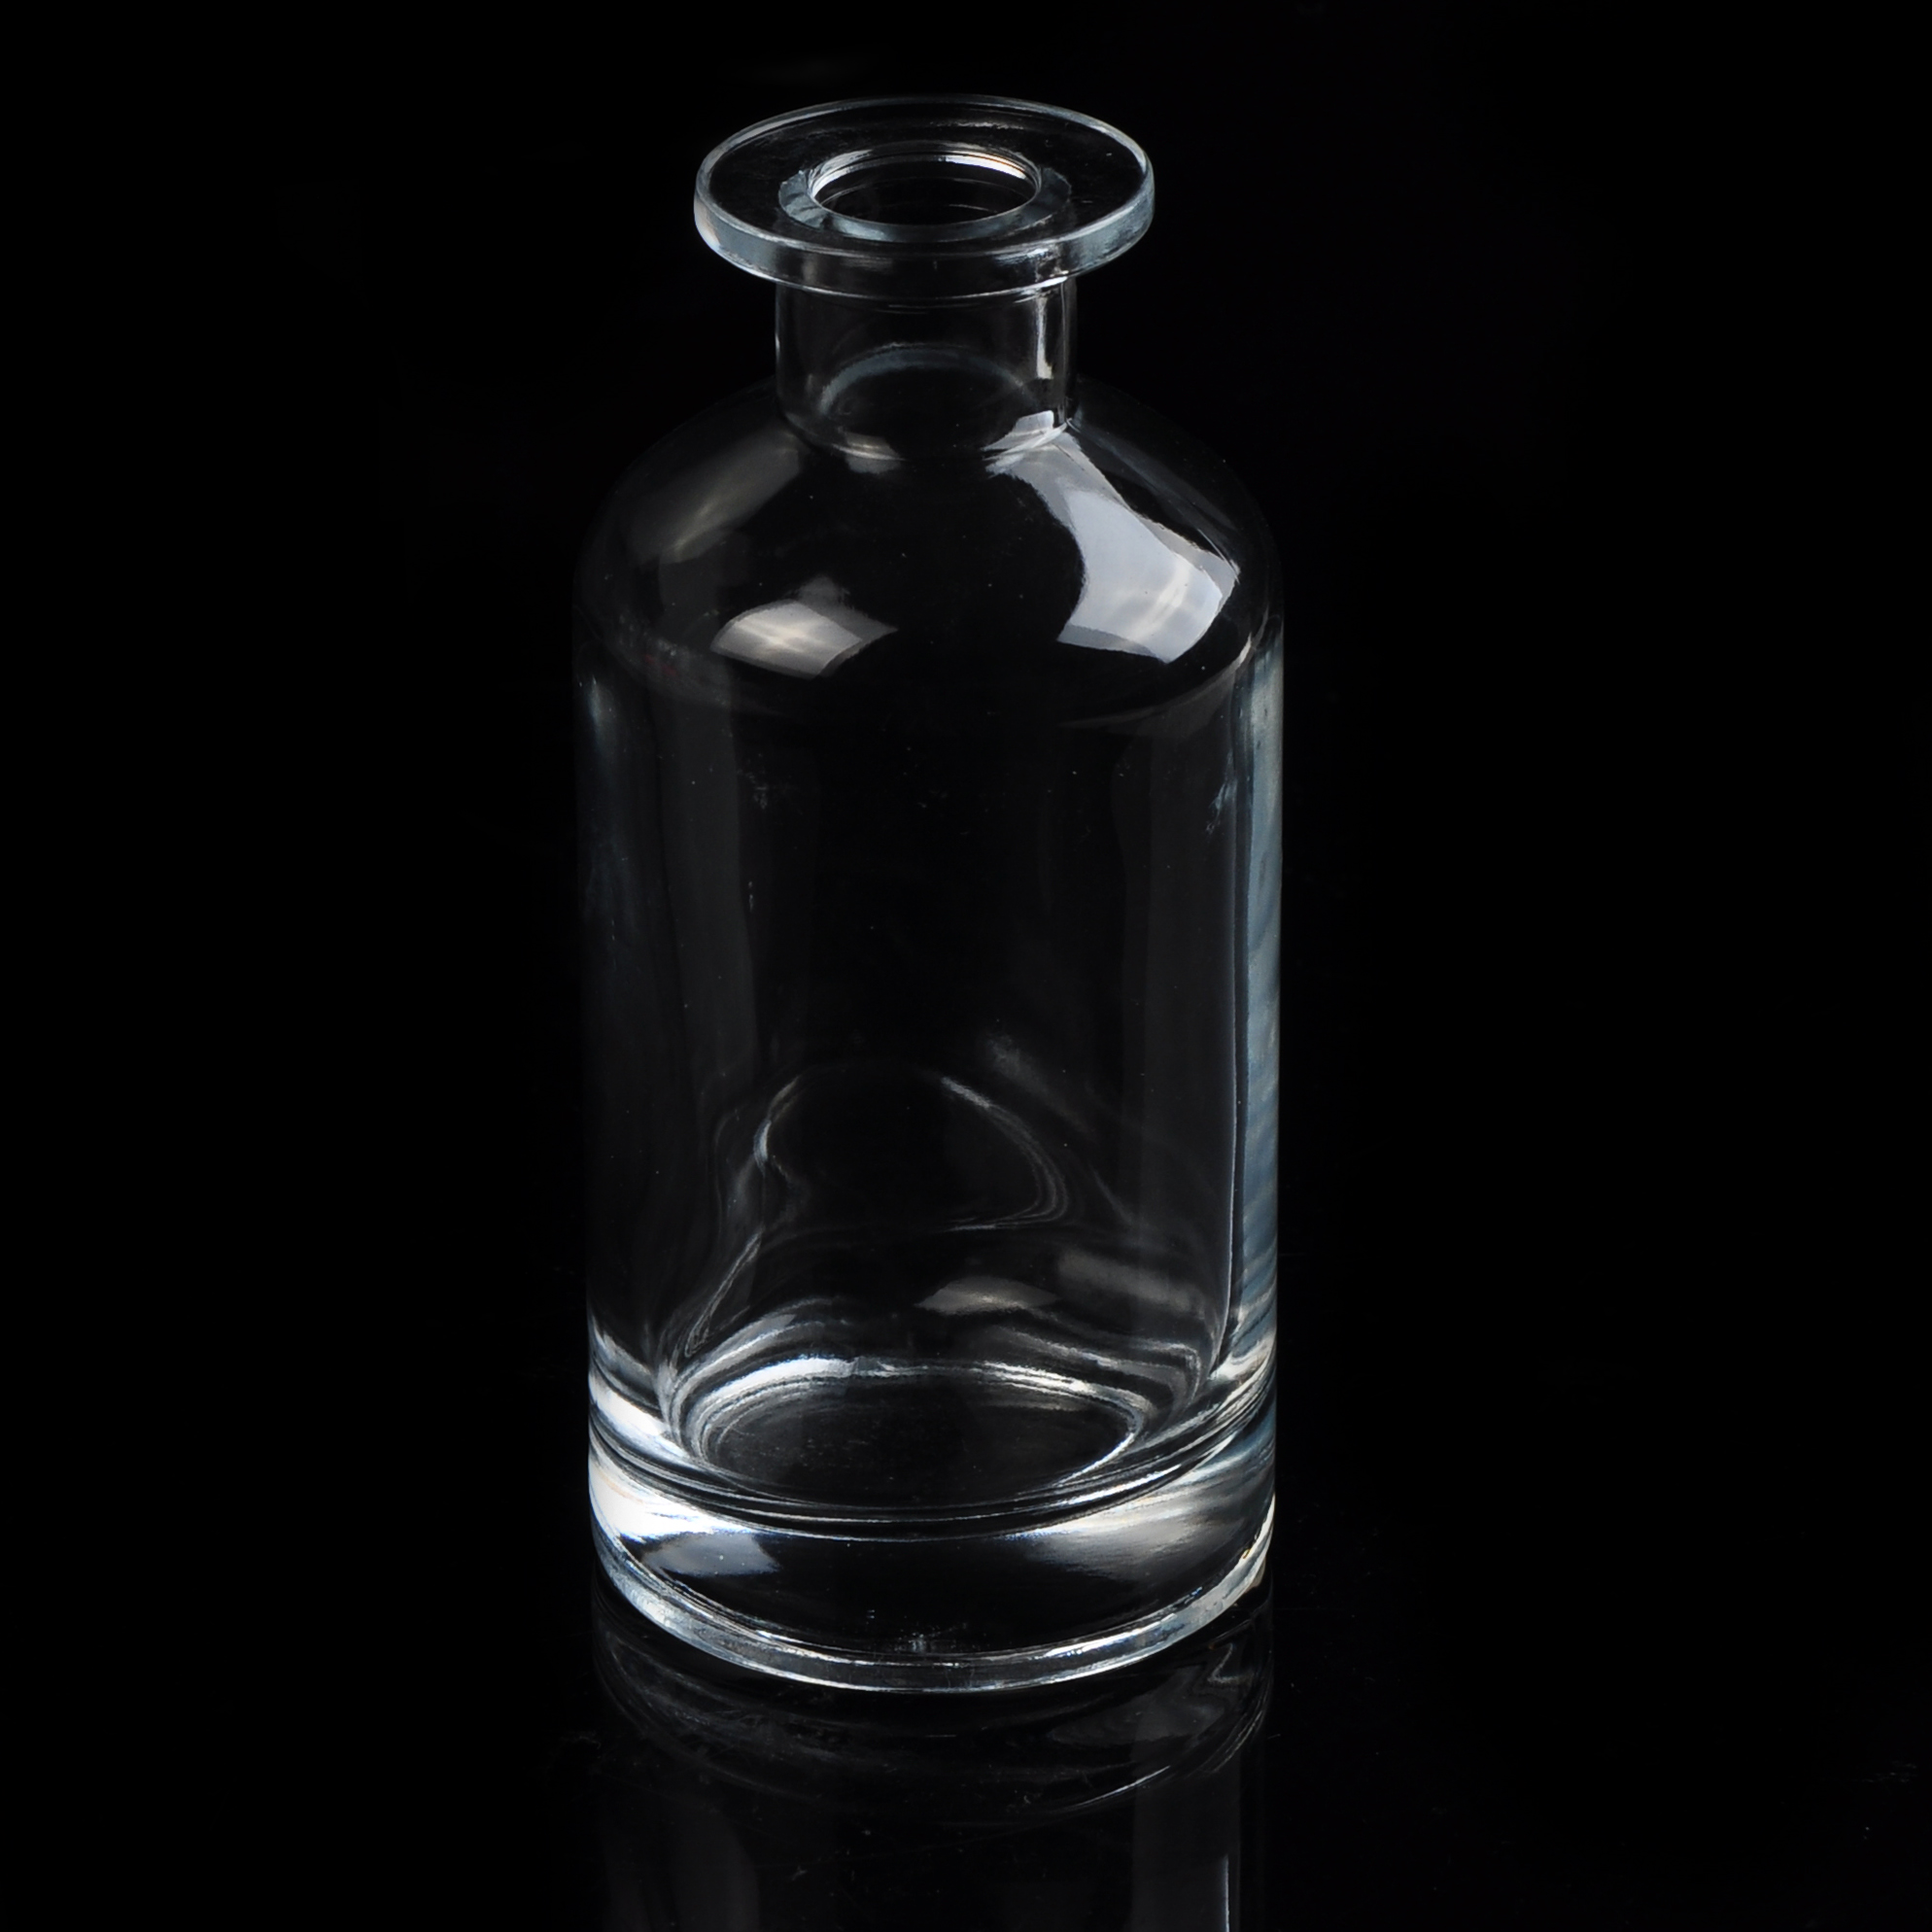 الزجاج واضحة زجاجة عطر